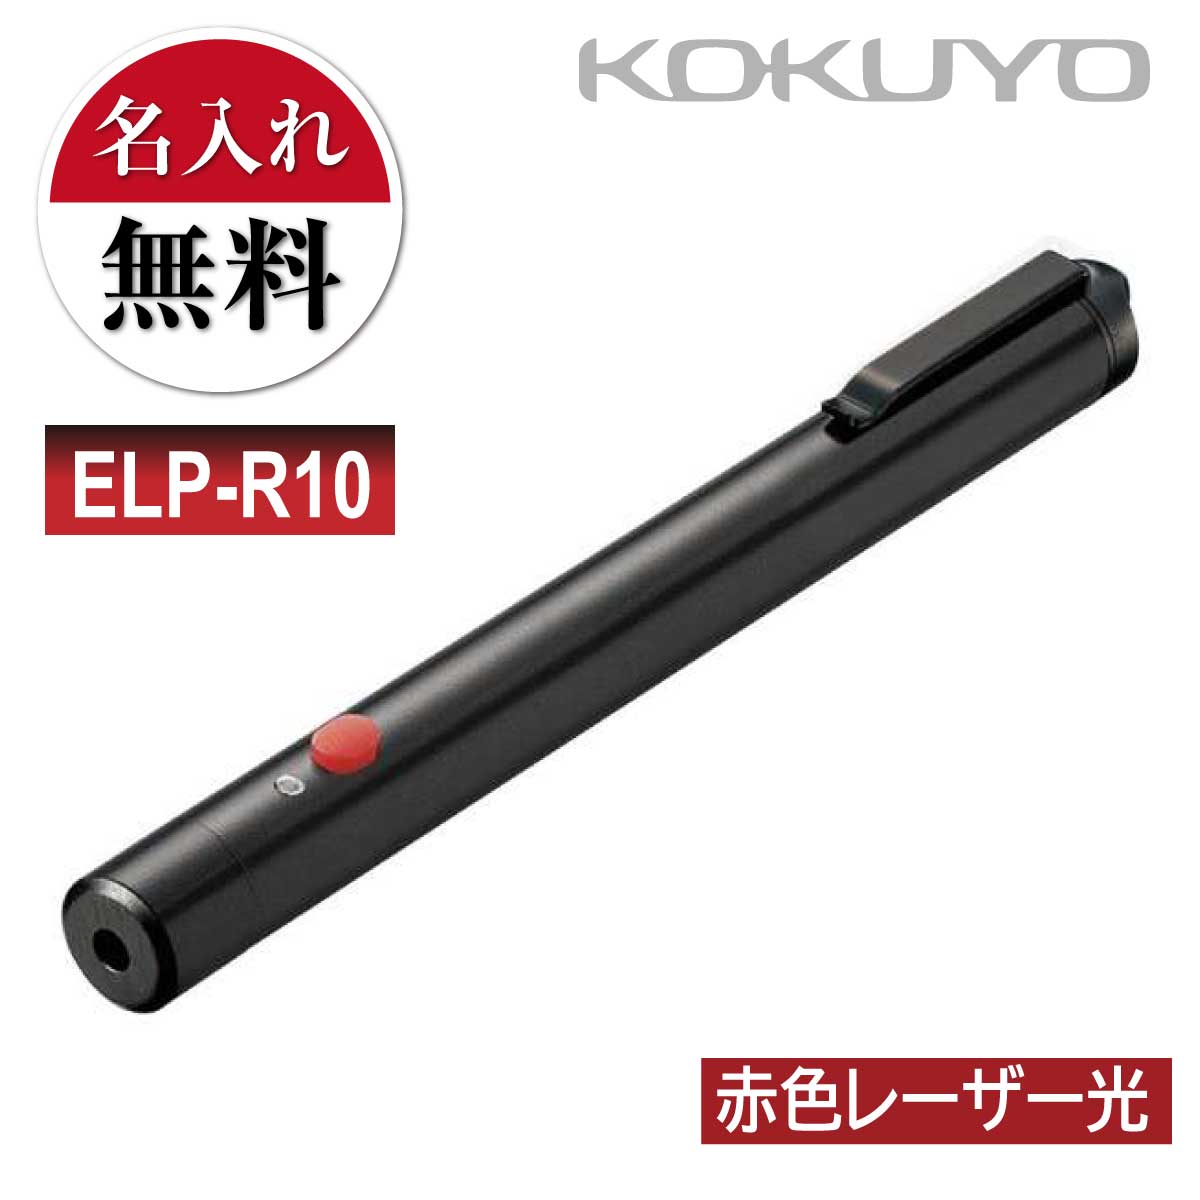 商品名赤色 レーザーポインター ペンタイプ ELP-R10 ■モニターの都合上、掲載写真と実際の色が異なる場合がございます点ご了承ください。本体カラー黒製品仕様材質：本体：アルミ合金、ボタン：ラバー 質量：約47g(電池含む) ビーム到達距離：約70m(夜間使用時) ビーム径：約5mm(距離3mの時) 付属品：単4形アルカリ乾電池2本(お試し用) 電池寿命：〈アルカリ乾電池使用時〉連続使用約24時間 点灯：レーザーボタンを押している間だけ点灯します。レーザー仕様可視光半導体レーザー、波長:635nm(赤色光) 最大出力/1mW(クラス2) ビーム到達距離/約70m(夜間使用時) ビーム径/約5mm(距離3mの時)電源アルカリ単4電池　2本(お試し用付属) 〈アルカリ乾電池使用時〉連続使用約24時間特長●ポケットに差して持ち運べるペンタイプで会議やプレゼンテーションをスマートに進行できます。 ●レーザー光の視認性アップ/通常の赤色光(波長:650nm)に比べ、約2倍明るく見えるレーザー光(波長:635nm)を採用し、色覚の個人差を問わずレーザー光の視認性を向上させました。 ●消費生活用製品安全法に適合。レーザーボタンを押している間だけ点灯する通電機能により、安心してお使いいただけます。[コクヨ] 赤色 レーザーポインター プレゼンにも最適 ELP-R10・ポケットに差して持ち運べるペンタイプで会議やプレゼンテーションをスマートに進行できます。 ・レーザー光の視認性アップ/通常の赤色光(波長：650nm)に比べ、約2倍明るく見えるレーザー光(波長：635nm)を採用し、色覚の個人差を問わずレーザー光の視認性を向上させました。 ・消費生活用製品安全法に適合。レーザーボタンを押している間だけ点灯する通電機能により、安心してお使いいただけます。ペンタイプの赤色レーザーポインターポケットに差して持ち運べるペンタイプで会議やプレゼンテーションをスマートに進行できますお名前入れ無料 レーザーポインター　プレゼントにも最適！レーザ彫刻にてお名前を刻印しますので名前が消えることもありません！ ご自身用、友人、同僚などへのプレゼントにも最適です！消費生活用製品安全法に適合レーザーボタンを押している間だけ点灯する通電機能により、安心してお使いいただけます。 関連商品はこちら[コクヨ] A3 ペーパーカッター 60枚切り...24,800円[コクヨ] テープカッター カルカット T-...1,280円[コクヨ] カッターマット カッティング...8,800円[コクヨ] カッターナイフ 安心構造 フレ...680円[コクヨ] カッターナイフ 安心構造 フレ...420円[サクラクレパス] 水性ペン ピグマック...1,100円[コクヨ] 10個セット 修正テープ ケシピ...1,900円[コクヨ] 10本セット ホワイトボード マ...1,300円[コクヨ] エアロフィット・スペリオ グ...1,350円[コクヨ] ハサミ はさみ ハサ-2NB ハサ-...520円